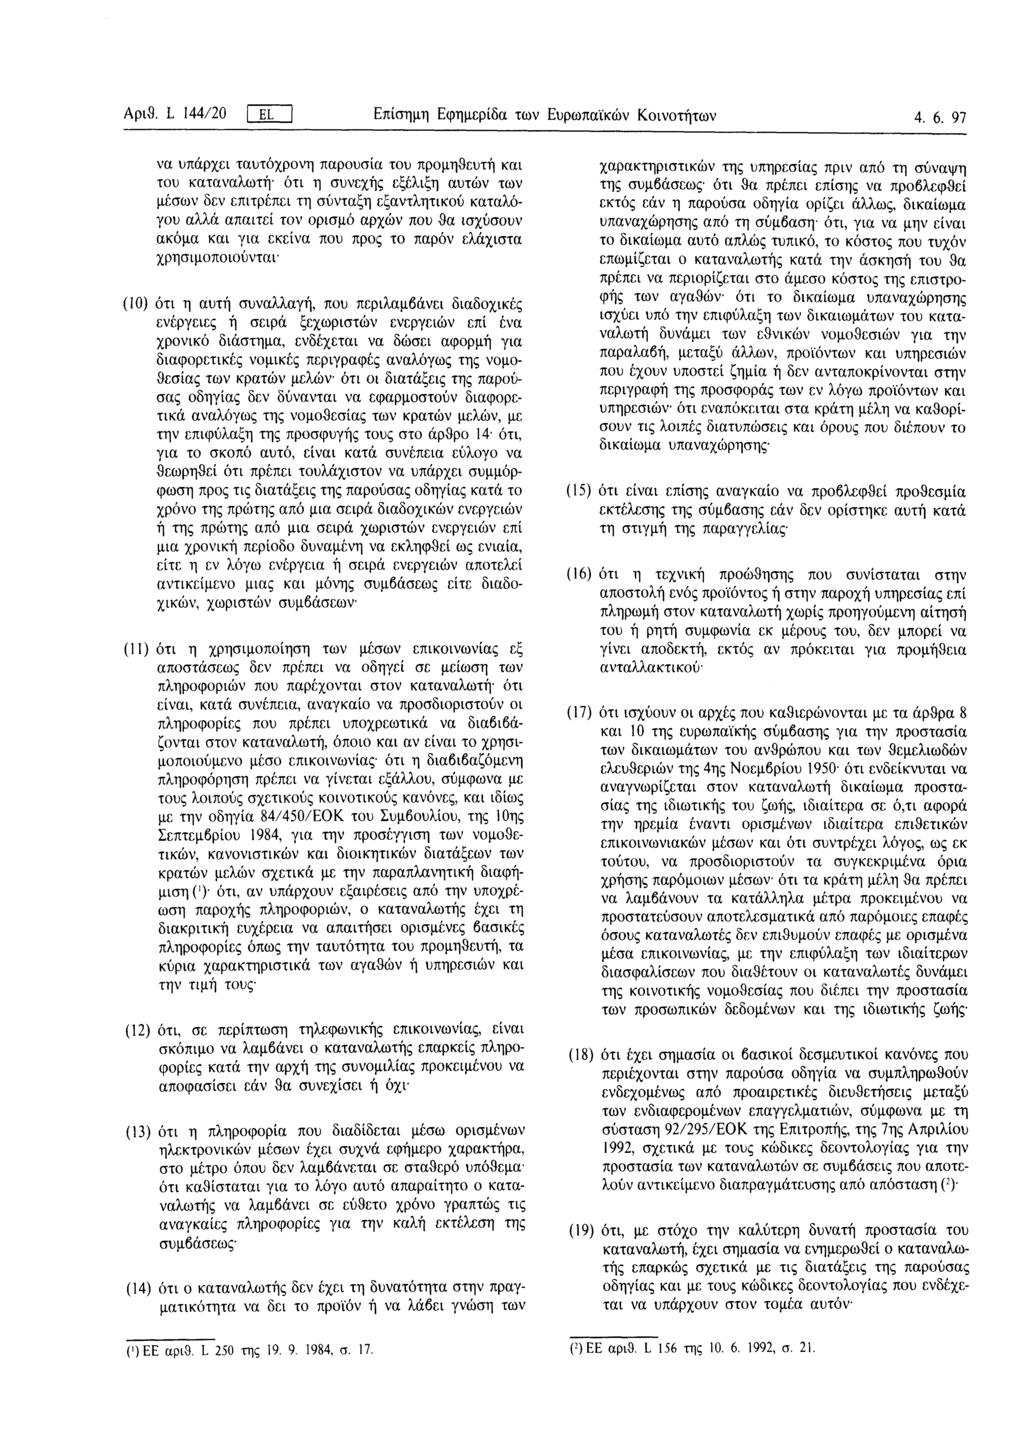 Αριθ. L 144/20 ΓJL Επίσημη Εφημερίδα των Ευρωπαϊκών Κοινοτήτων 4. 6.